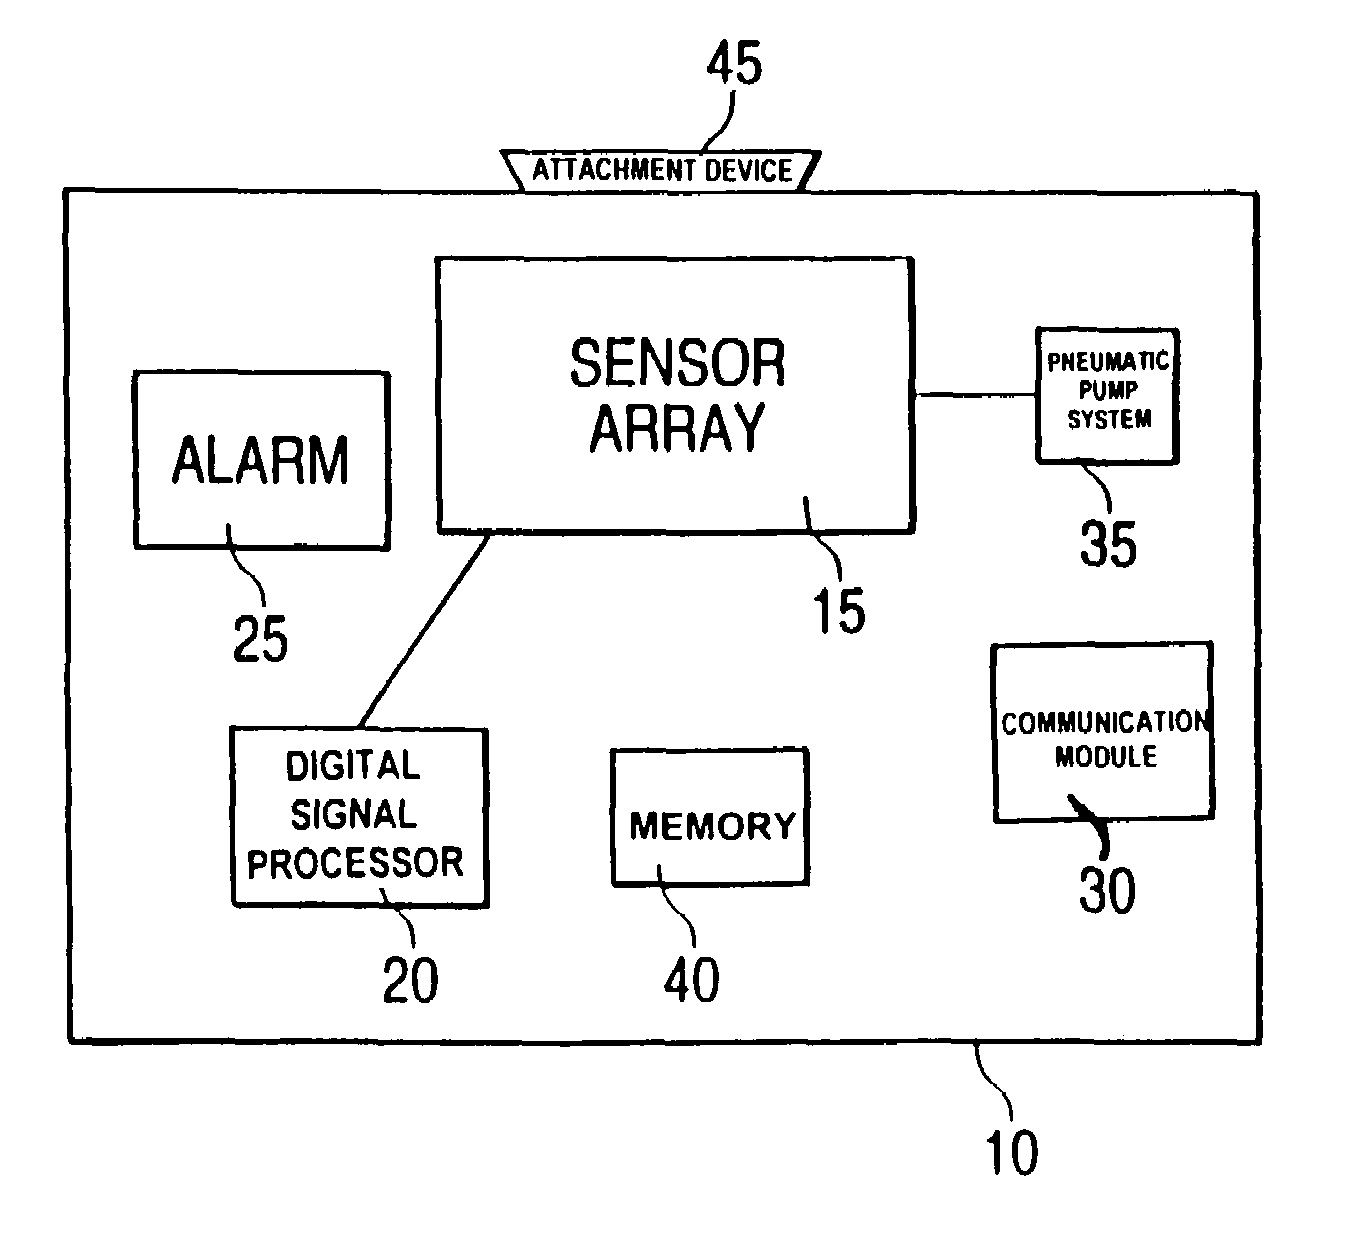 Non-specific sensor array detectors